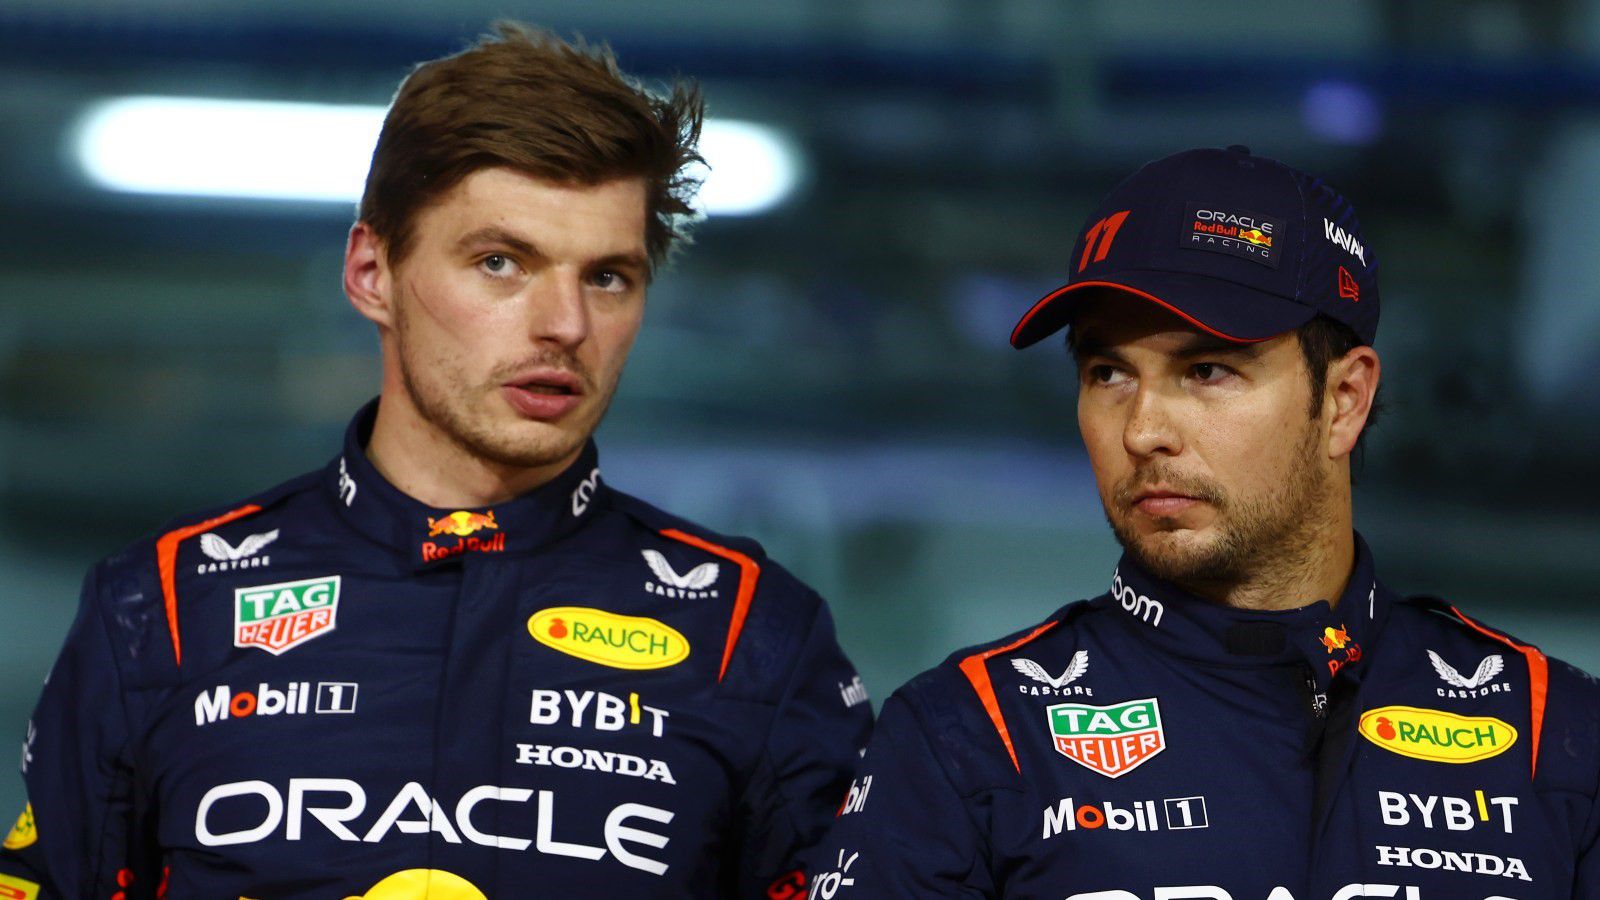 Max Verstappen és Sergio Pérez kemény csatát vívott a sprintfutamon Ausztriában